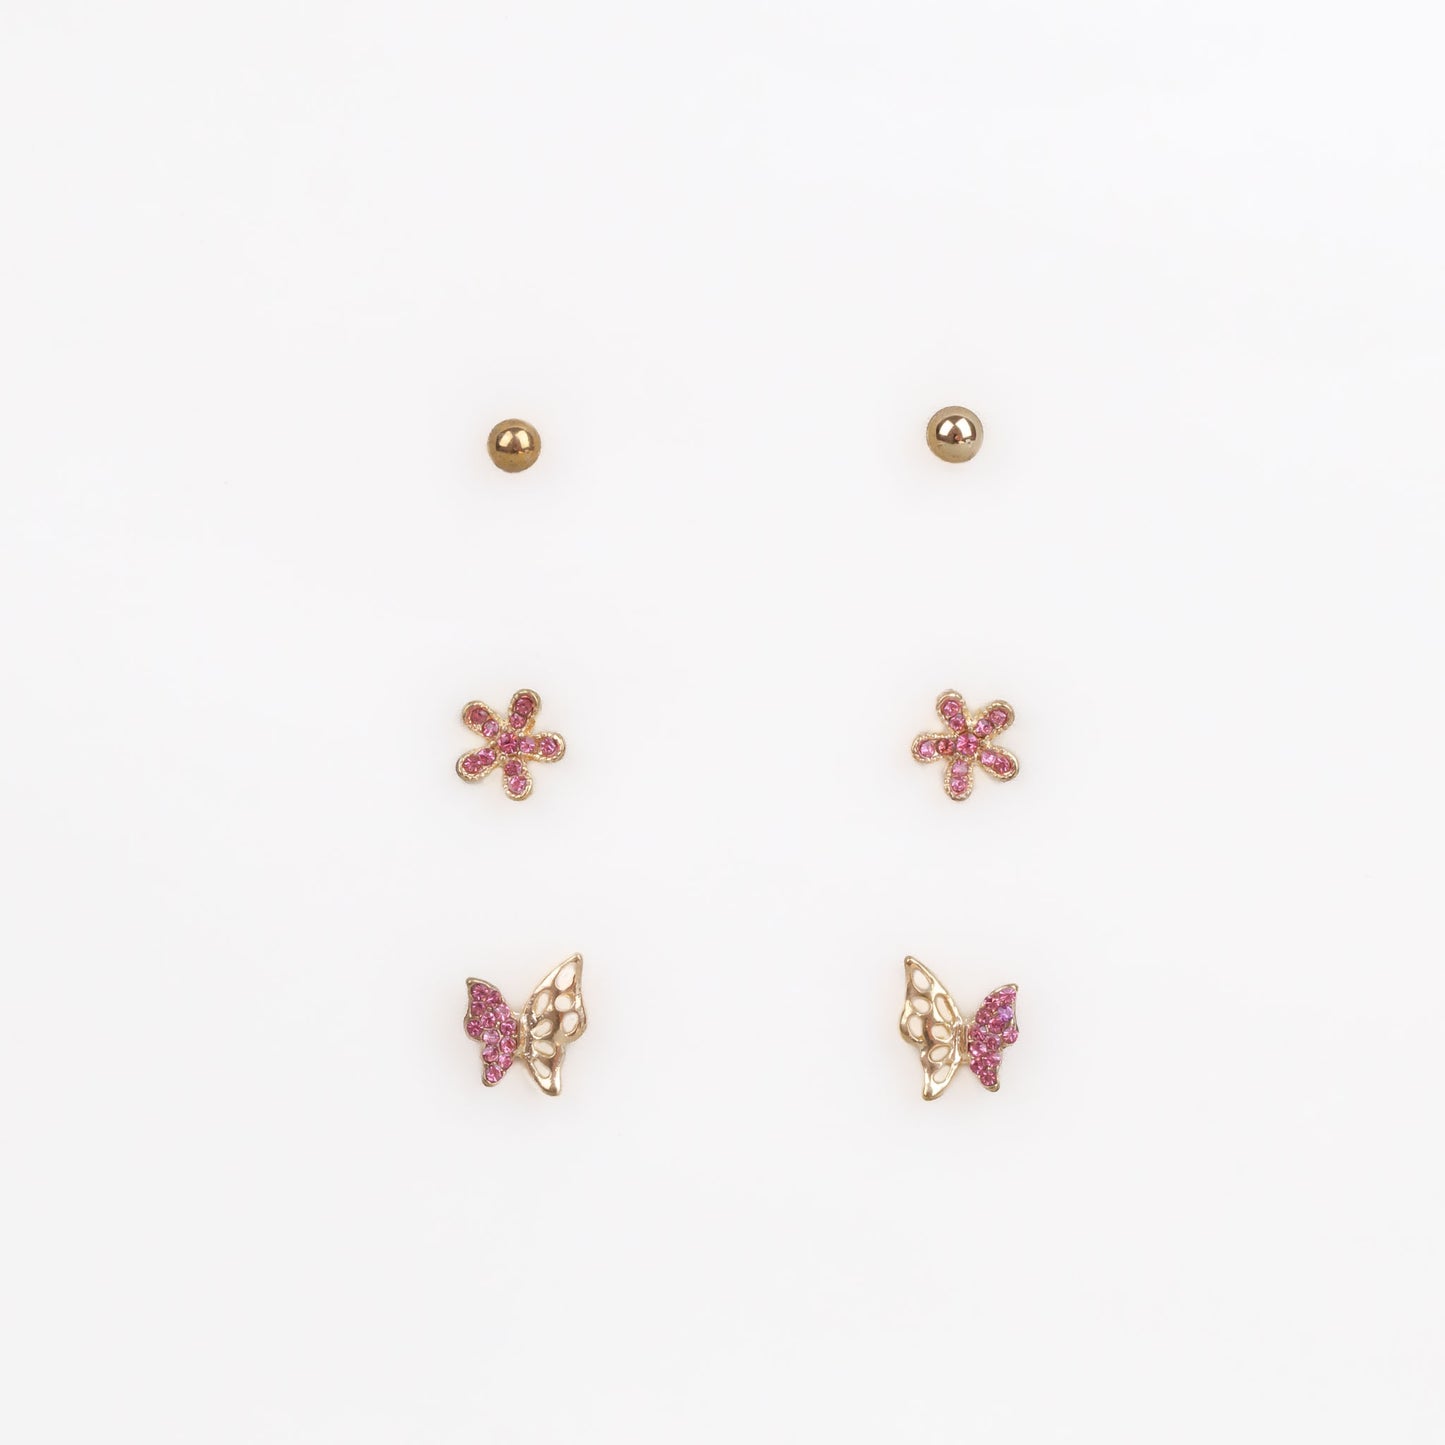 Cercei mici aurii cu fluture, floare și ștrasuri, set 3 perechi - Roz